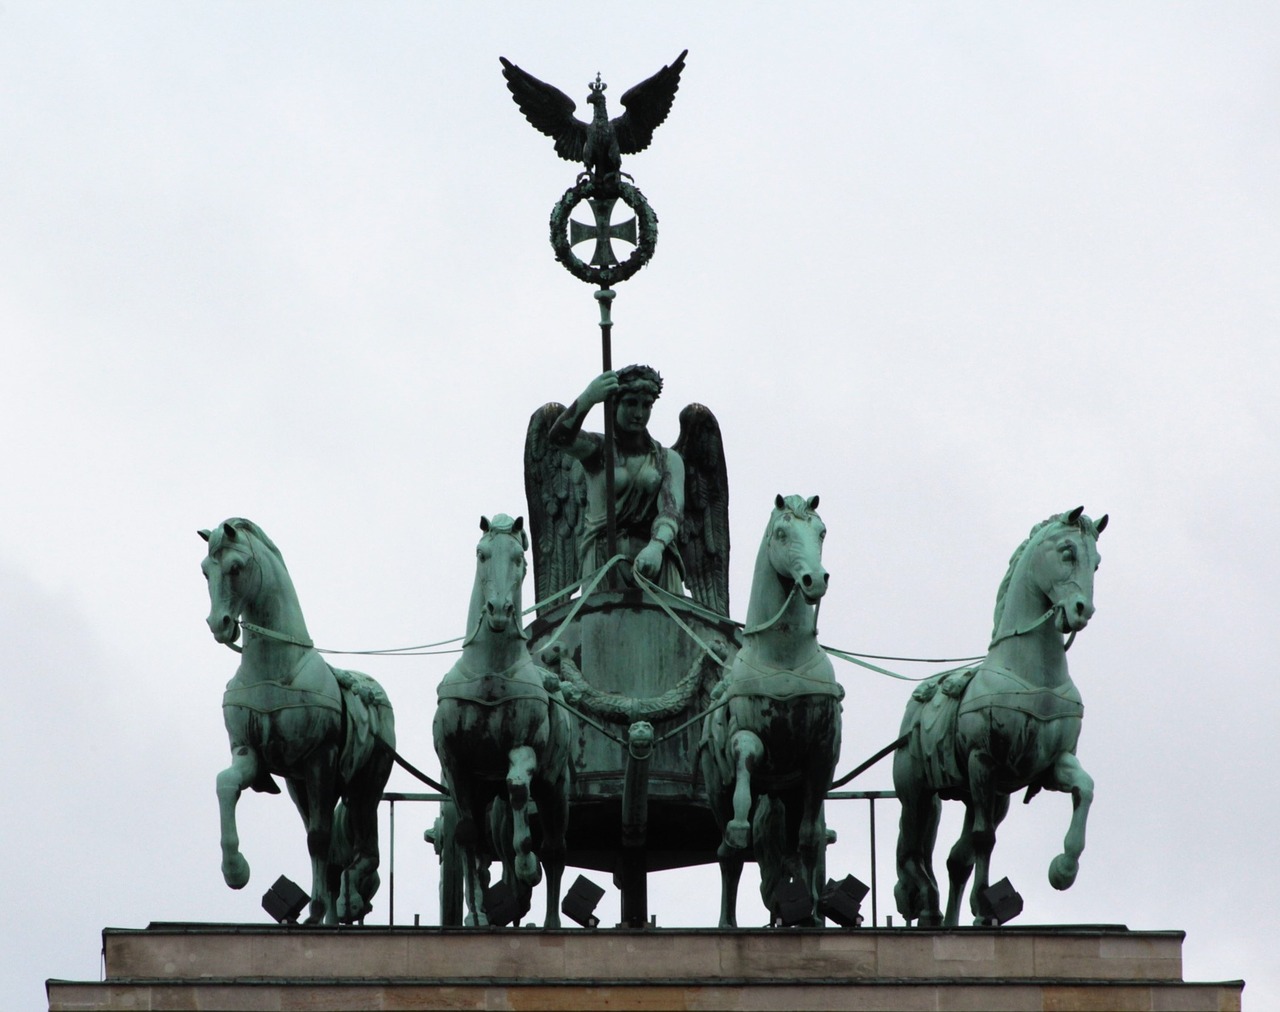 Brandenburg Gate Quadriga Horses Tourist Attraction Places Of Interest Free Image From Needpix Com